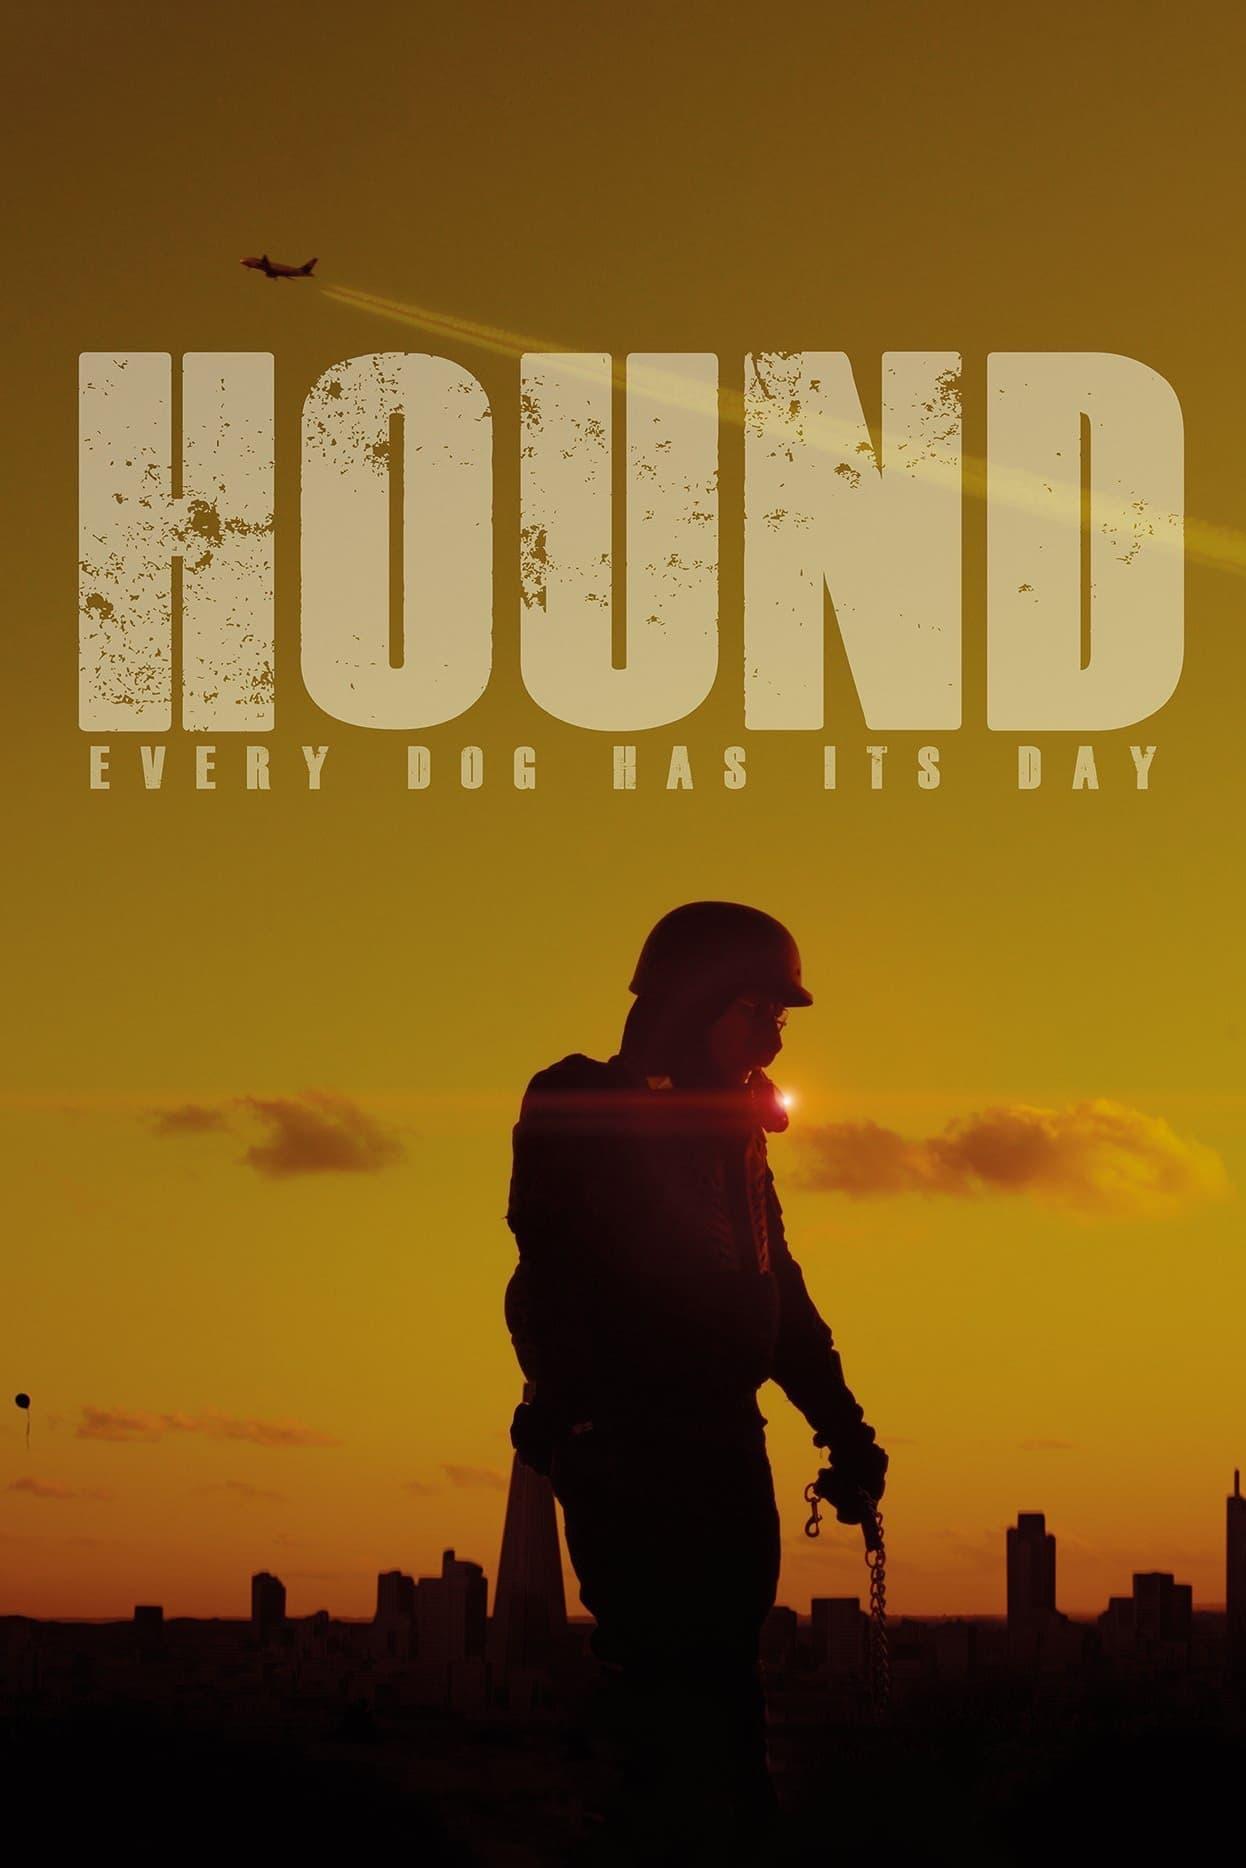 Hound poster